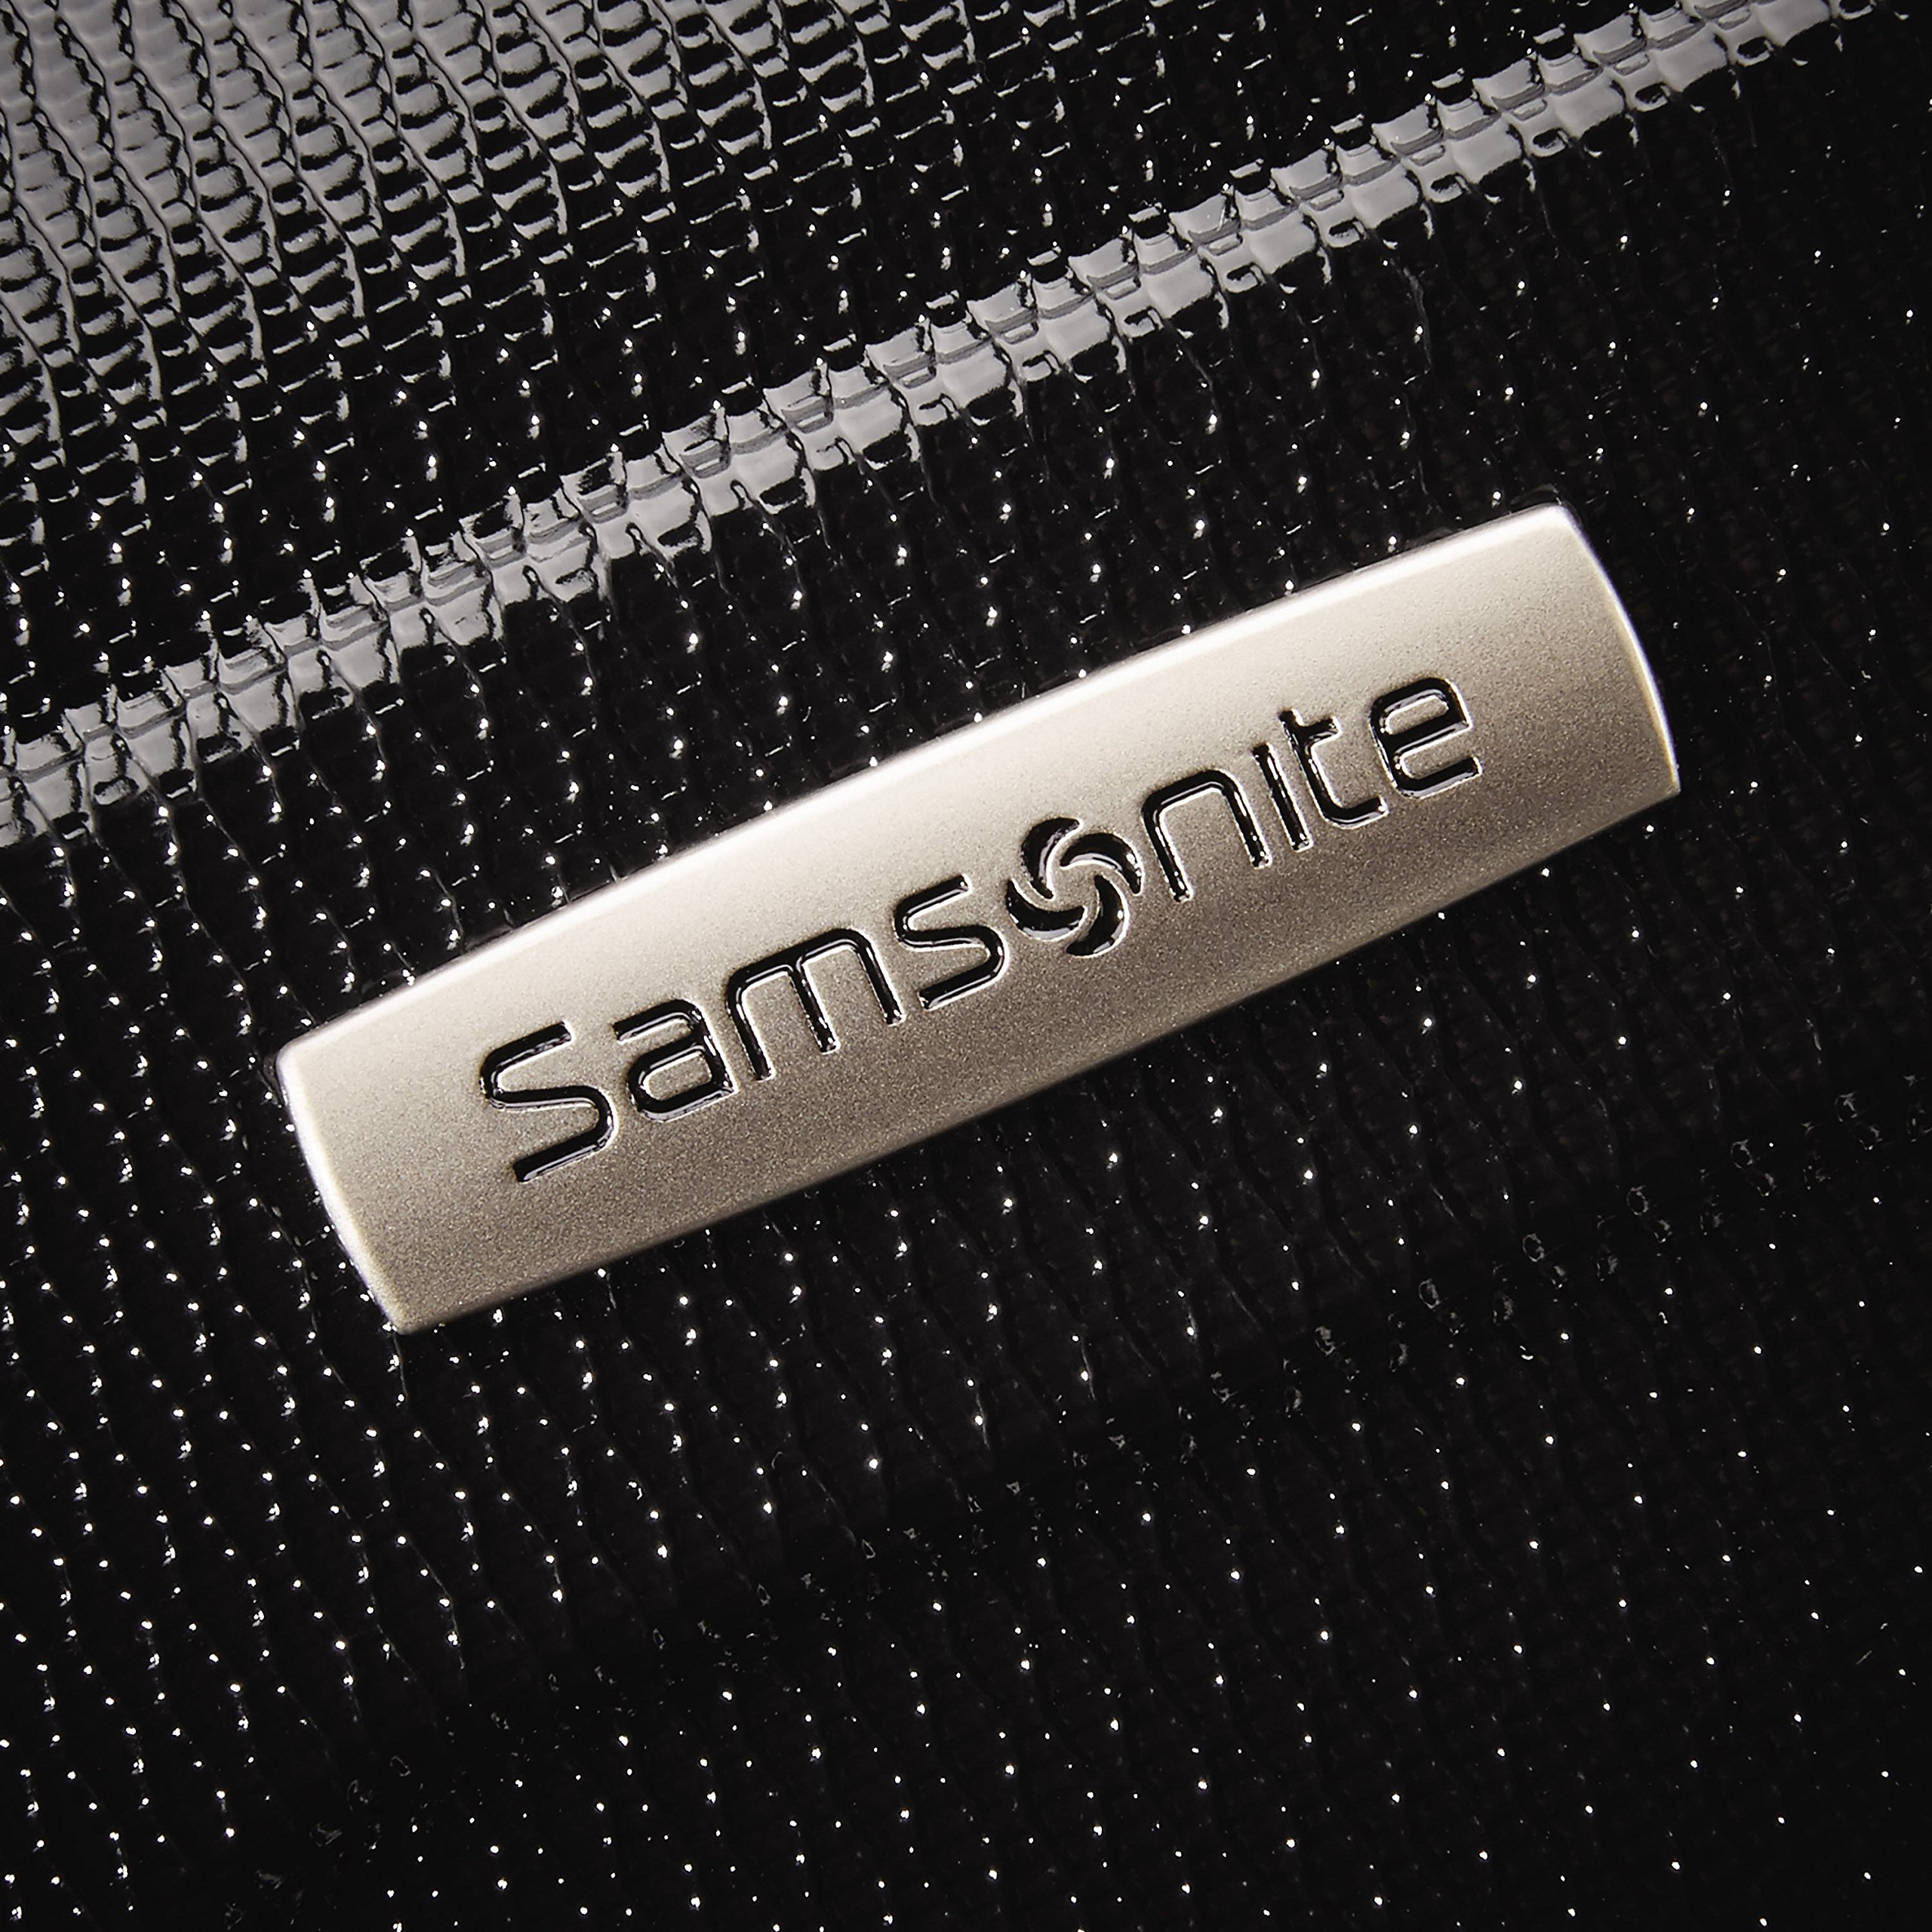 Samsonite Tread Lite Hardside Luggage, Black, 2-Piece Set (20/28)